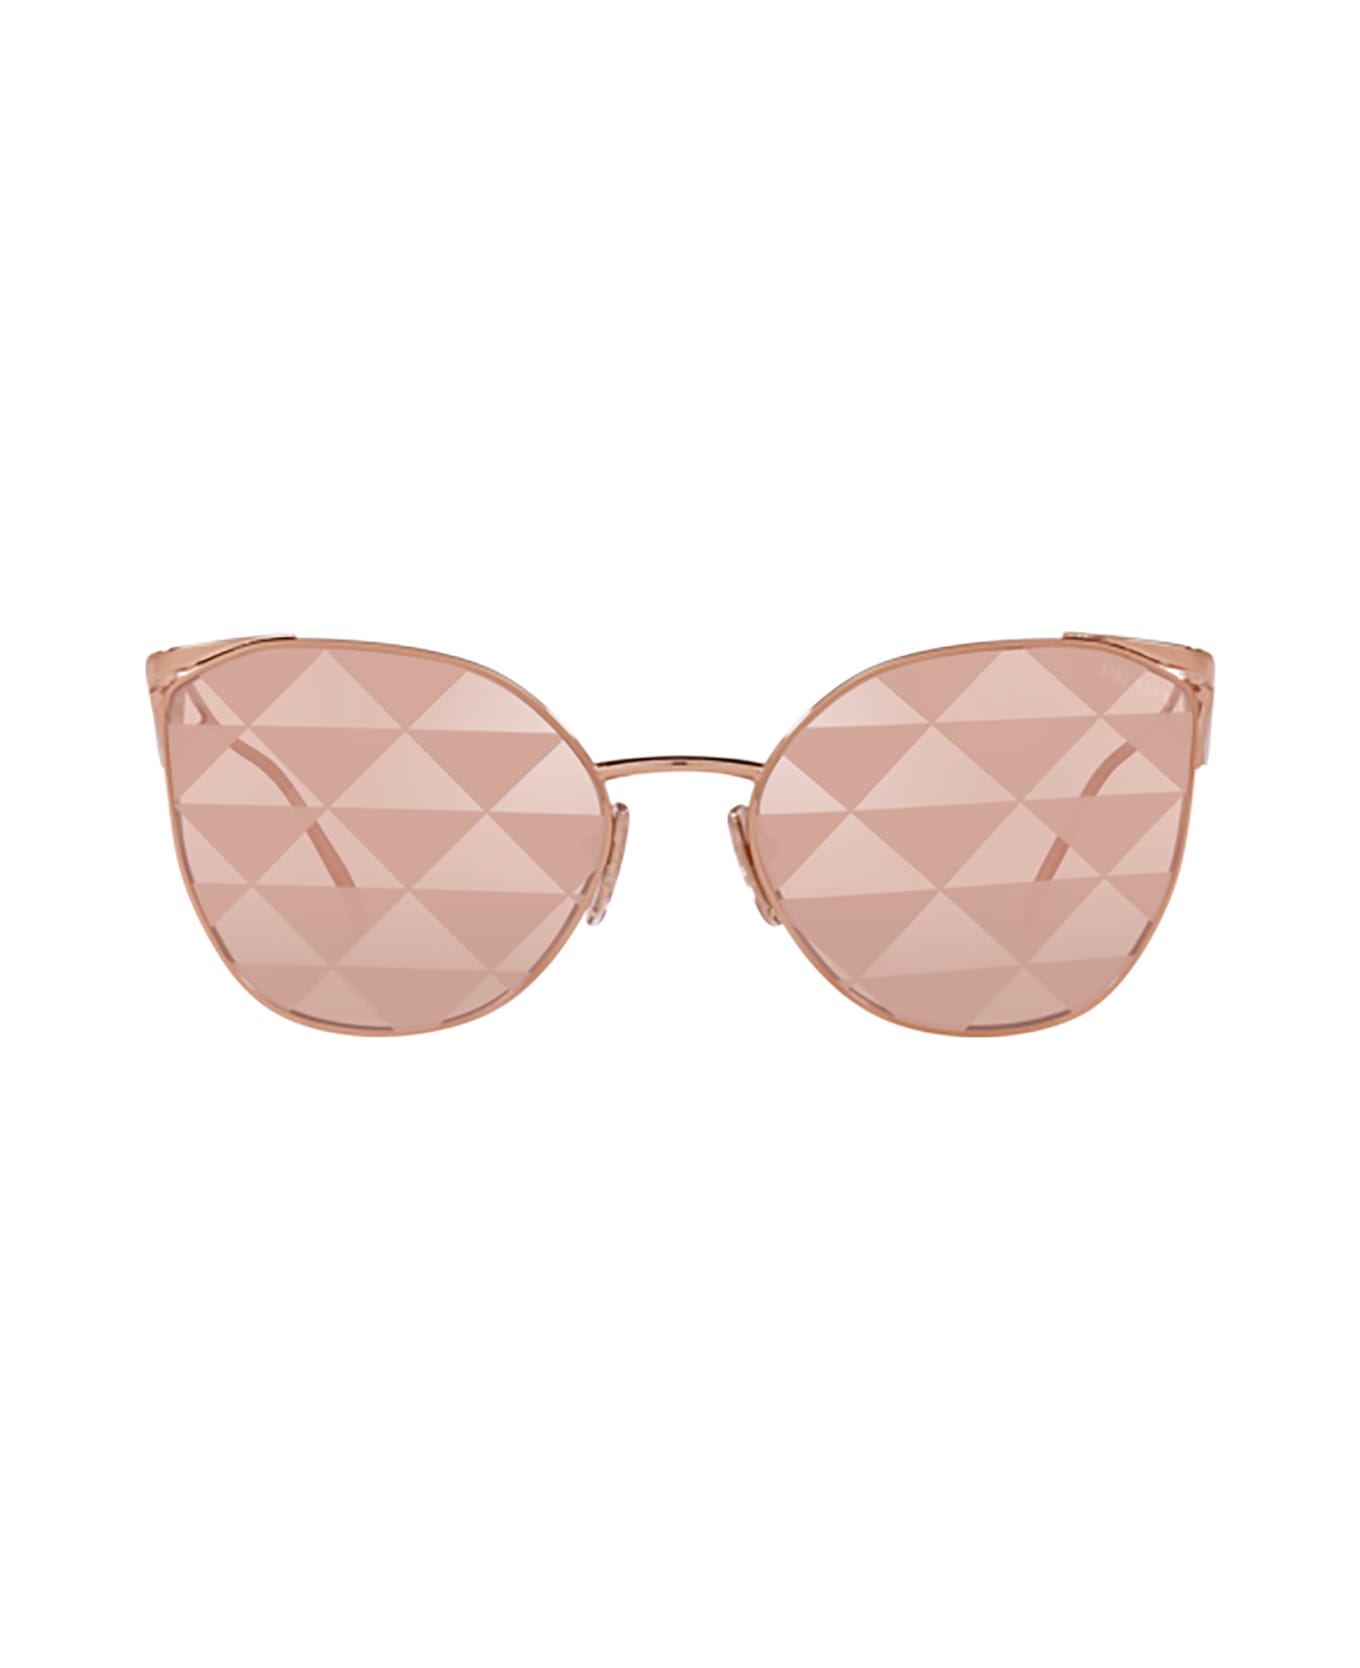 Prada Eyewear Pr 50zs Pink Gold Sunglasses - Pink Gold